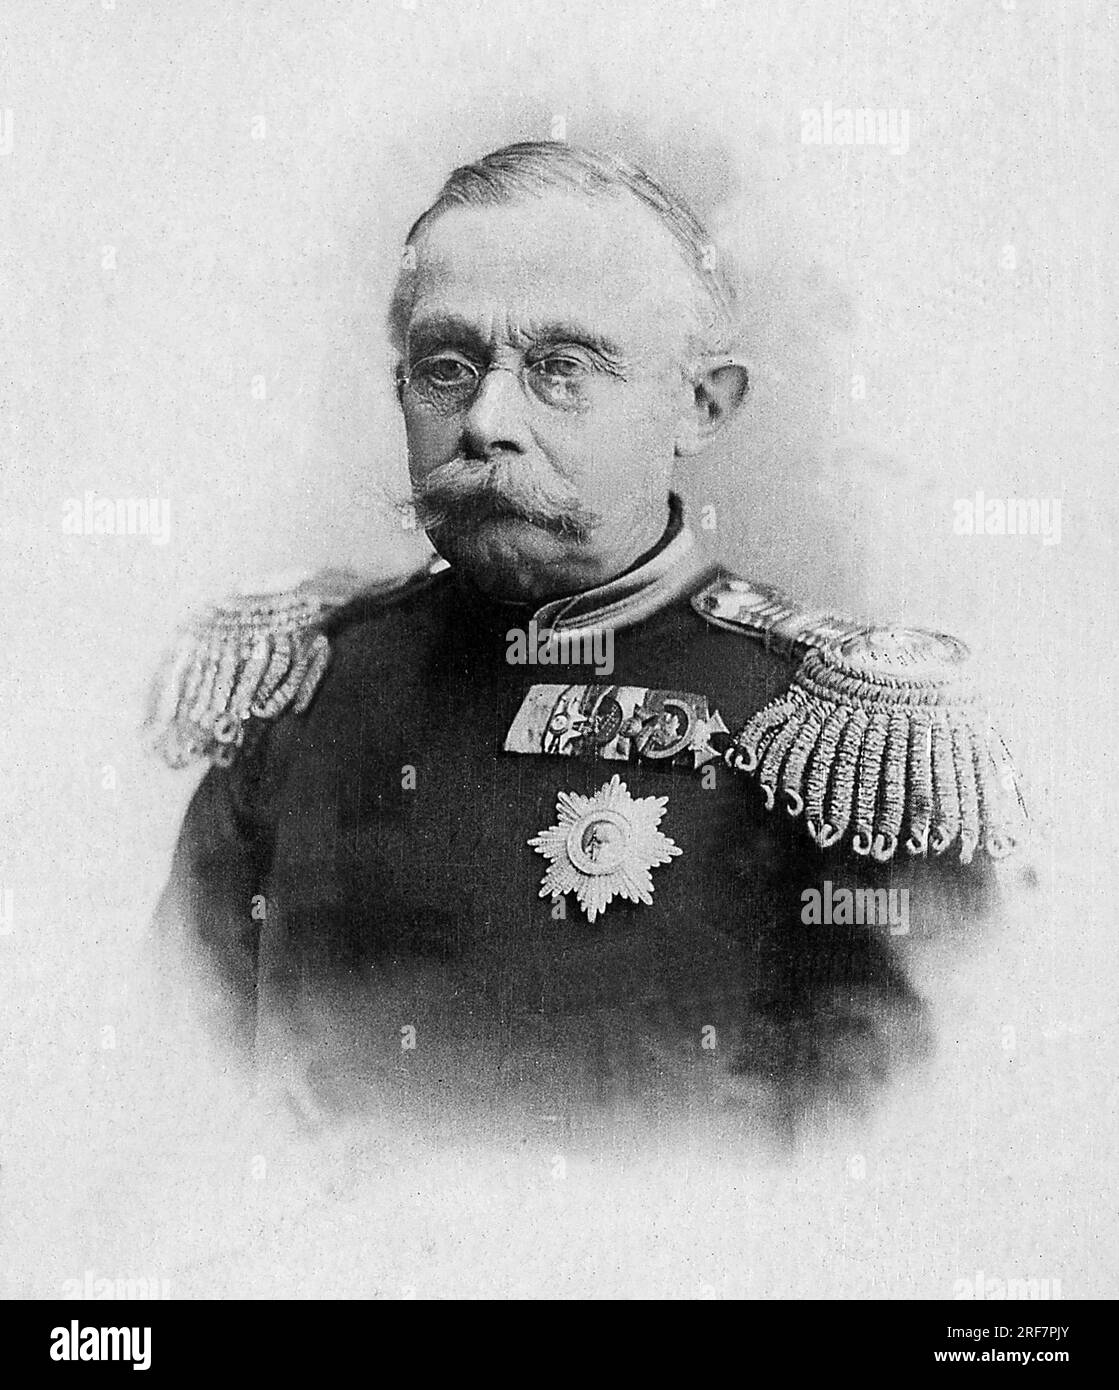 Portrait de Adolphe de Nassau, Grand Duc de Luxembourg (1817-1905), il fut le fondateur de la dynastie nationale regnante du Luxembourg, depuis son unabhändance en 1890. Fotografie, Debüt du 20e Siecle. Stockfoto